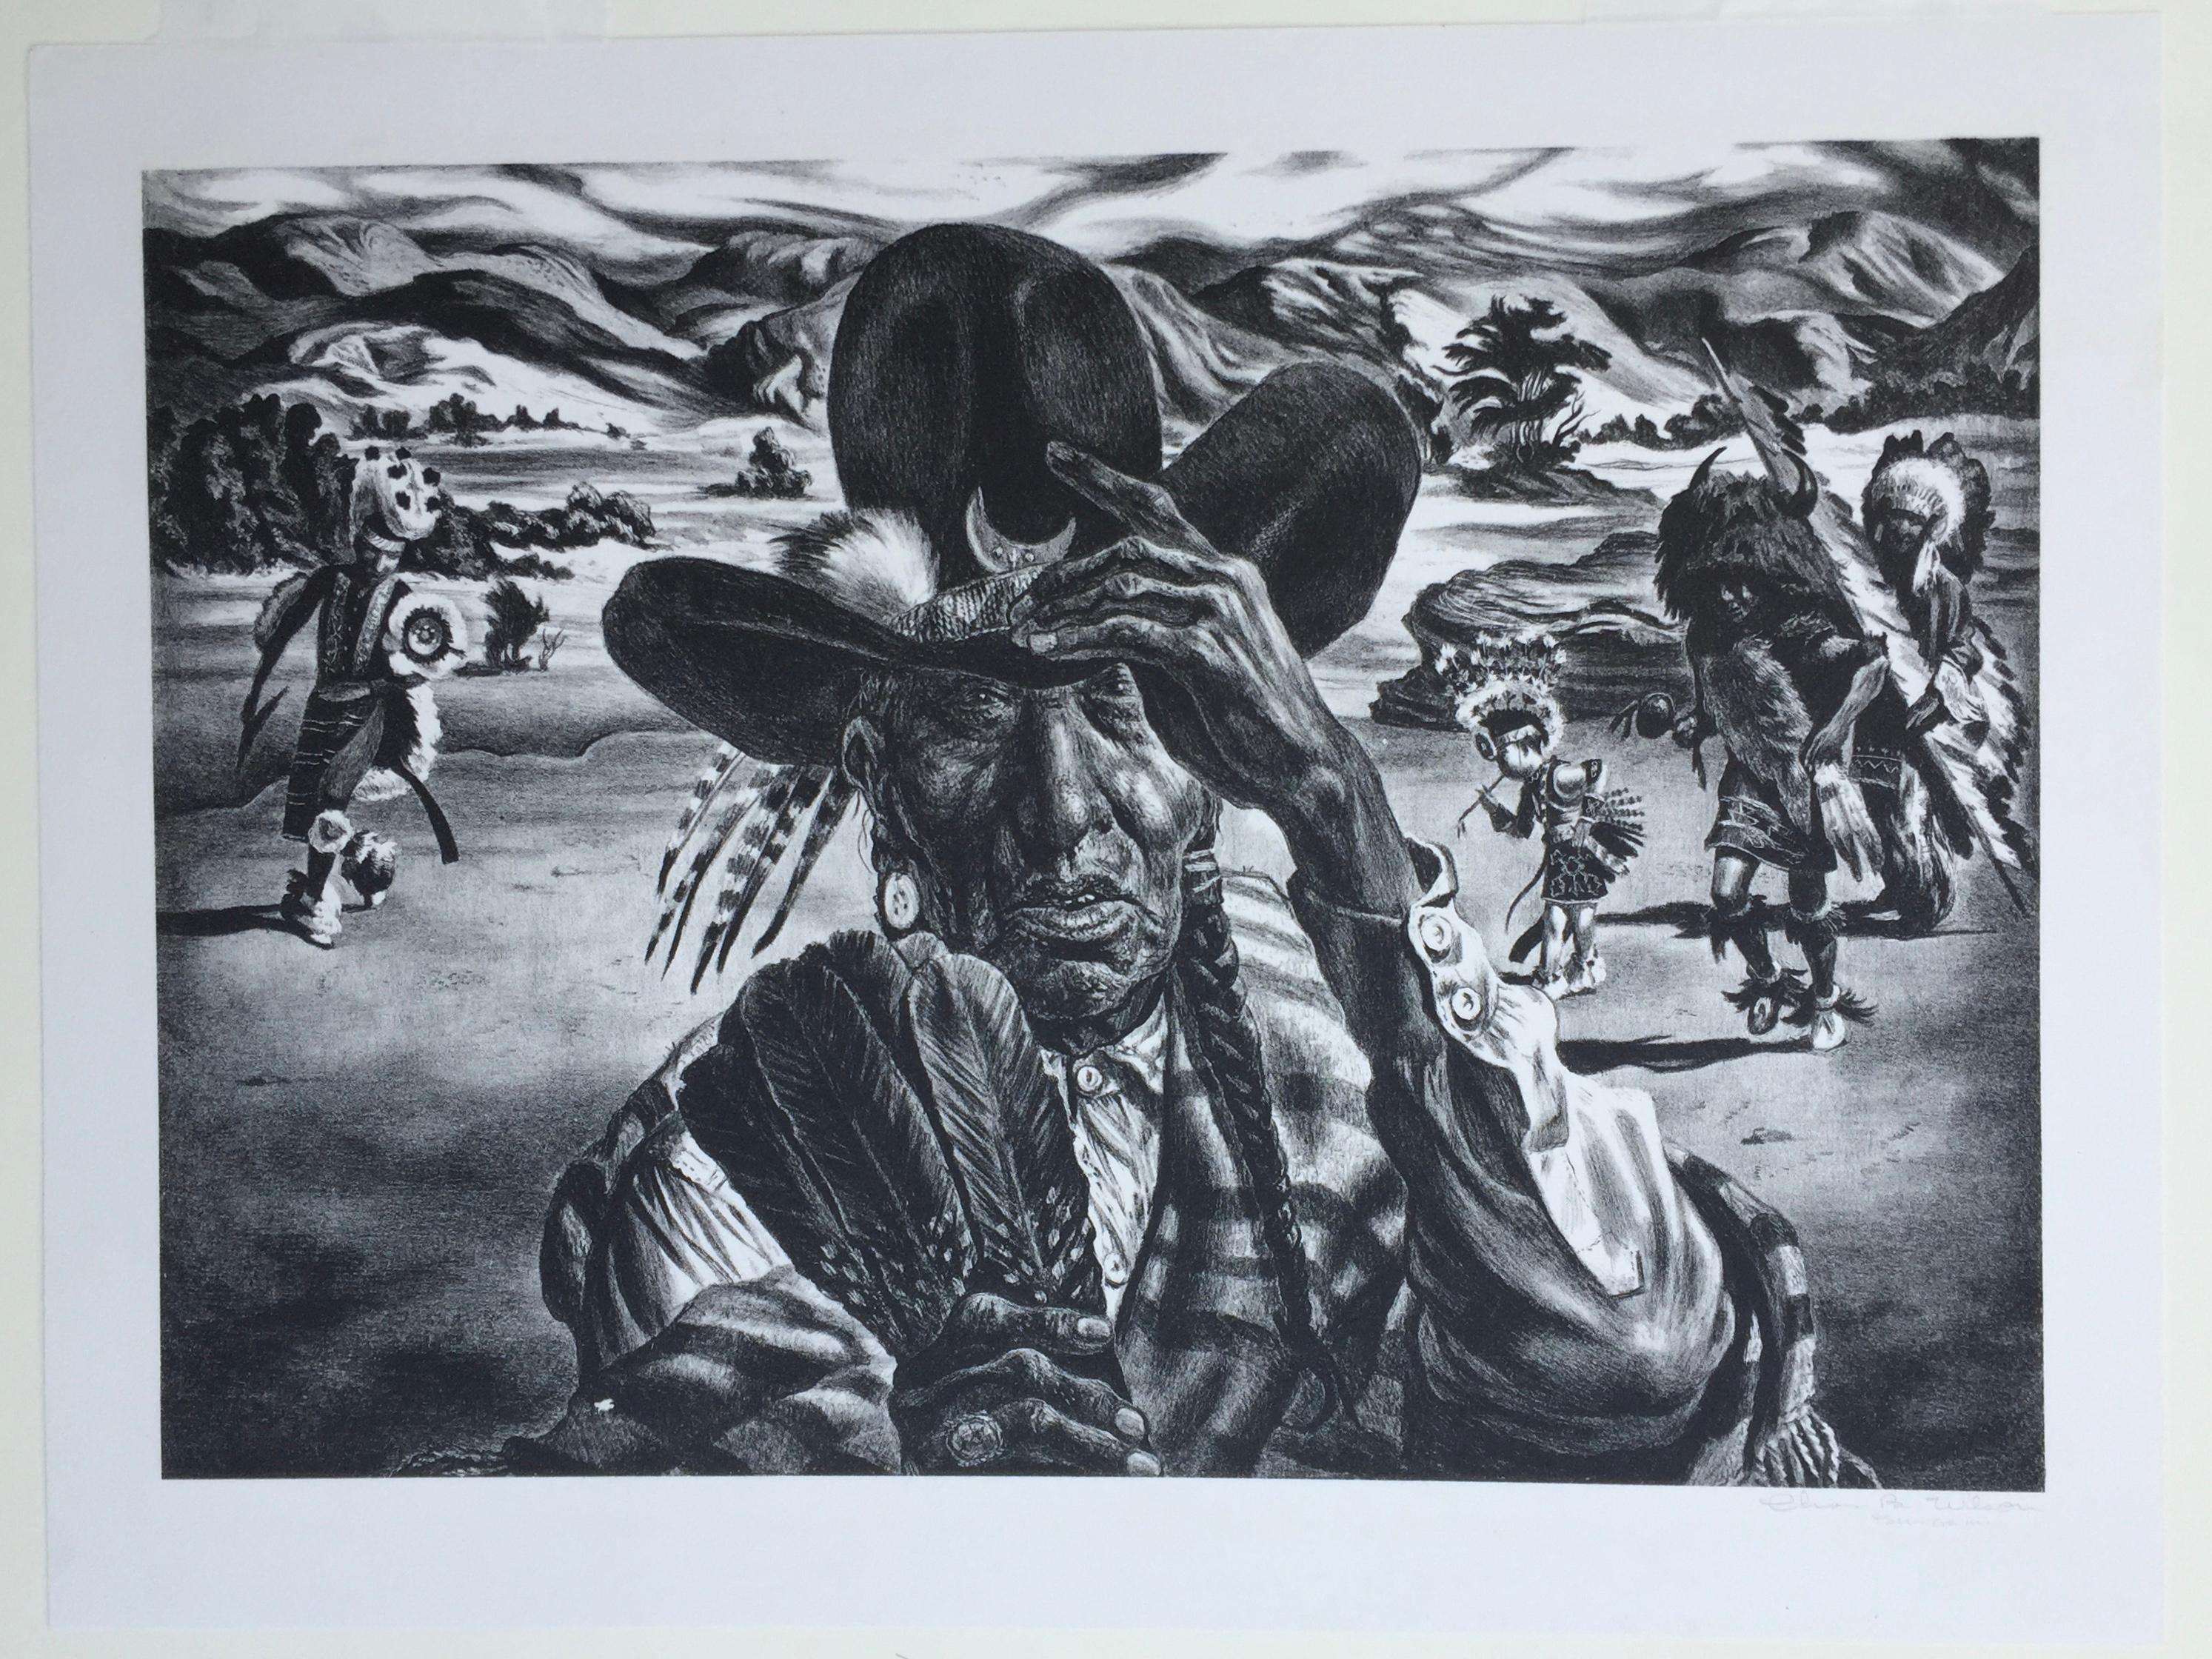 Portrait de la Comanche - Print de Charles Banks Wilson